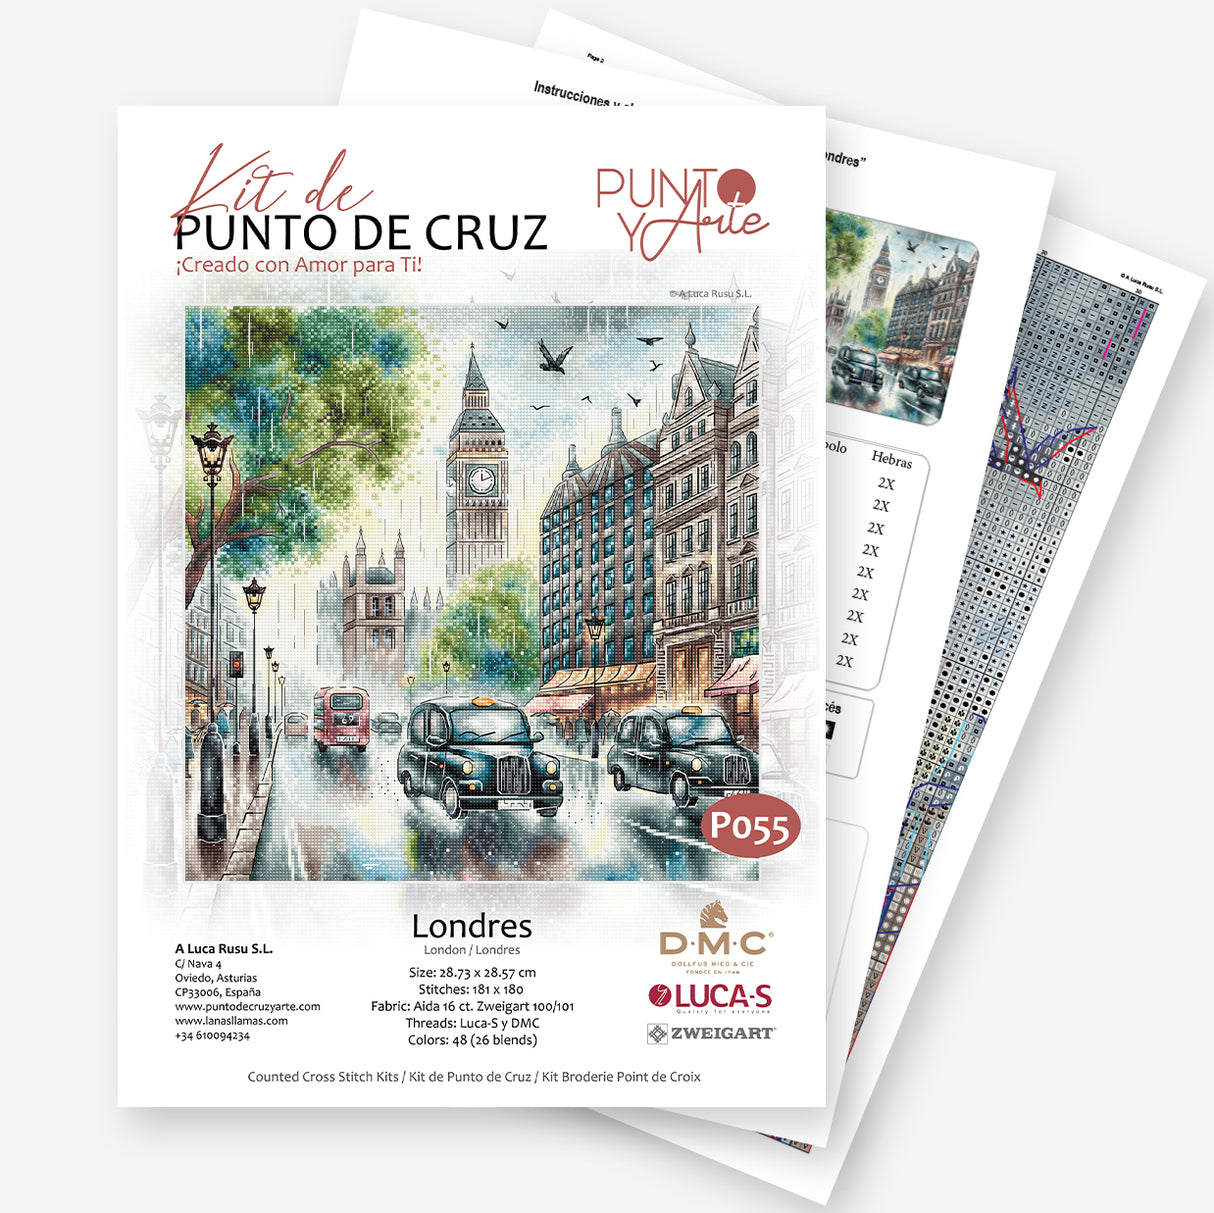 Kit de Punto de Cruz "Londres" de Punto y Arte - P055